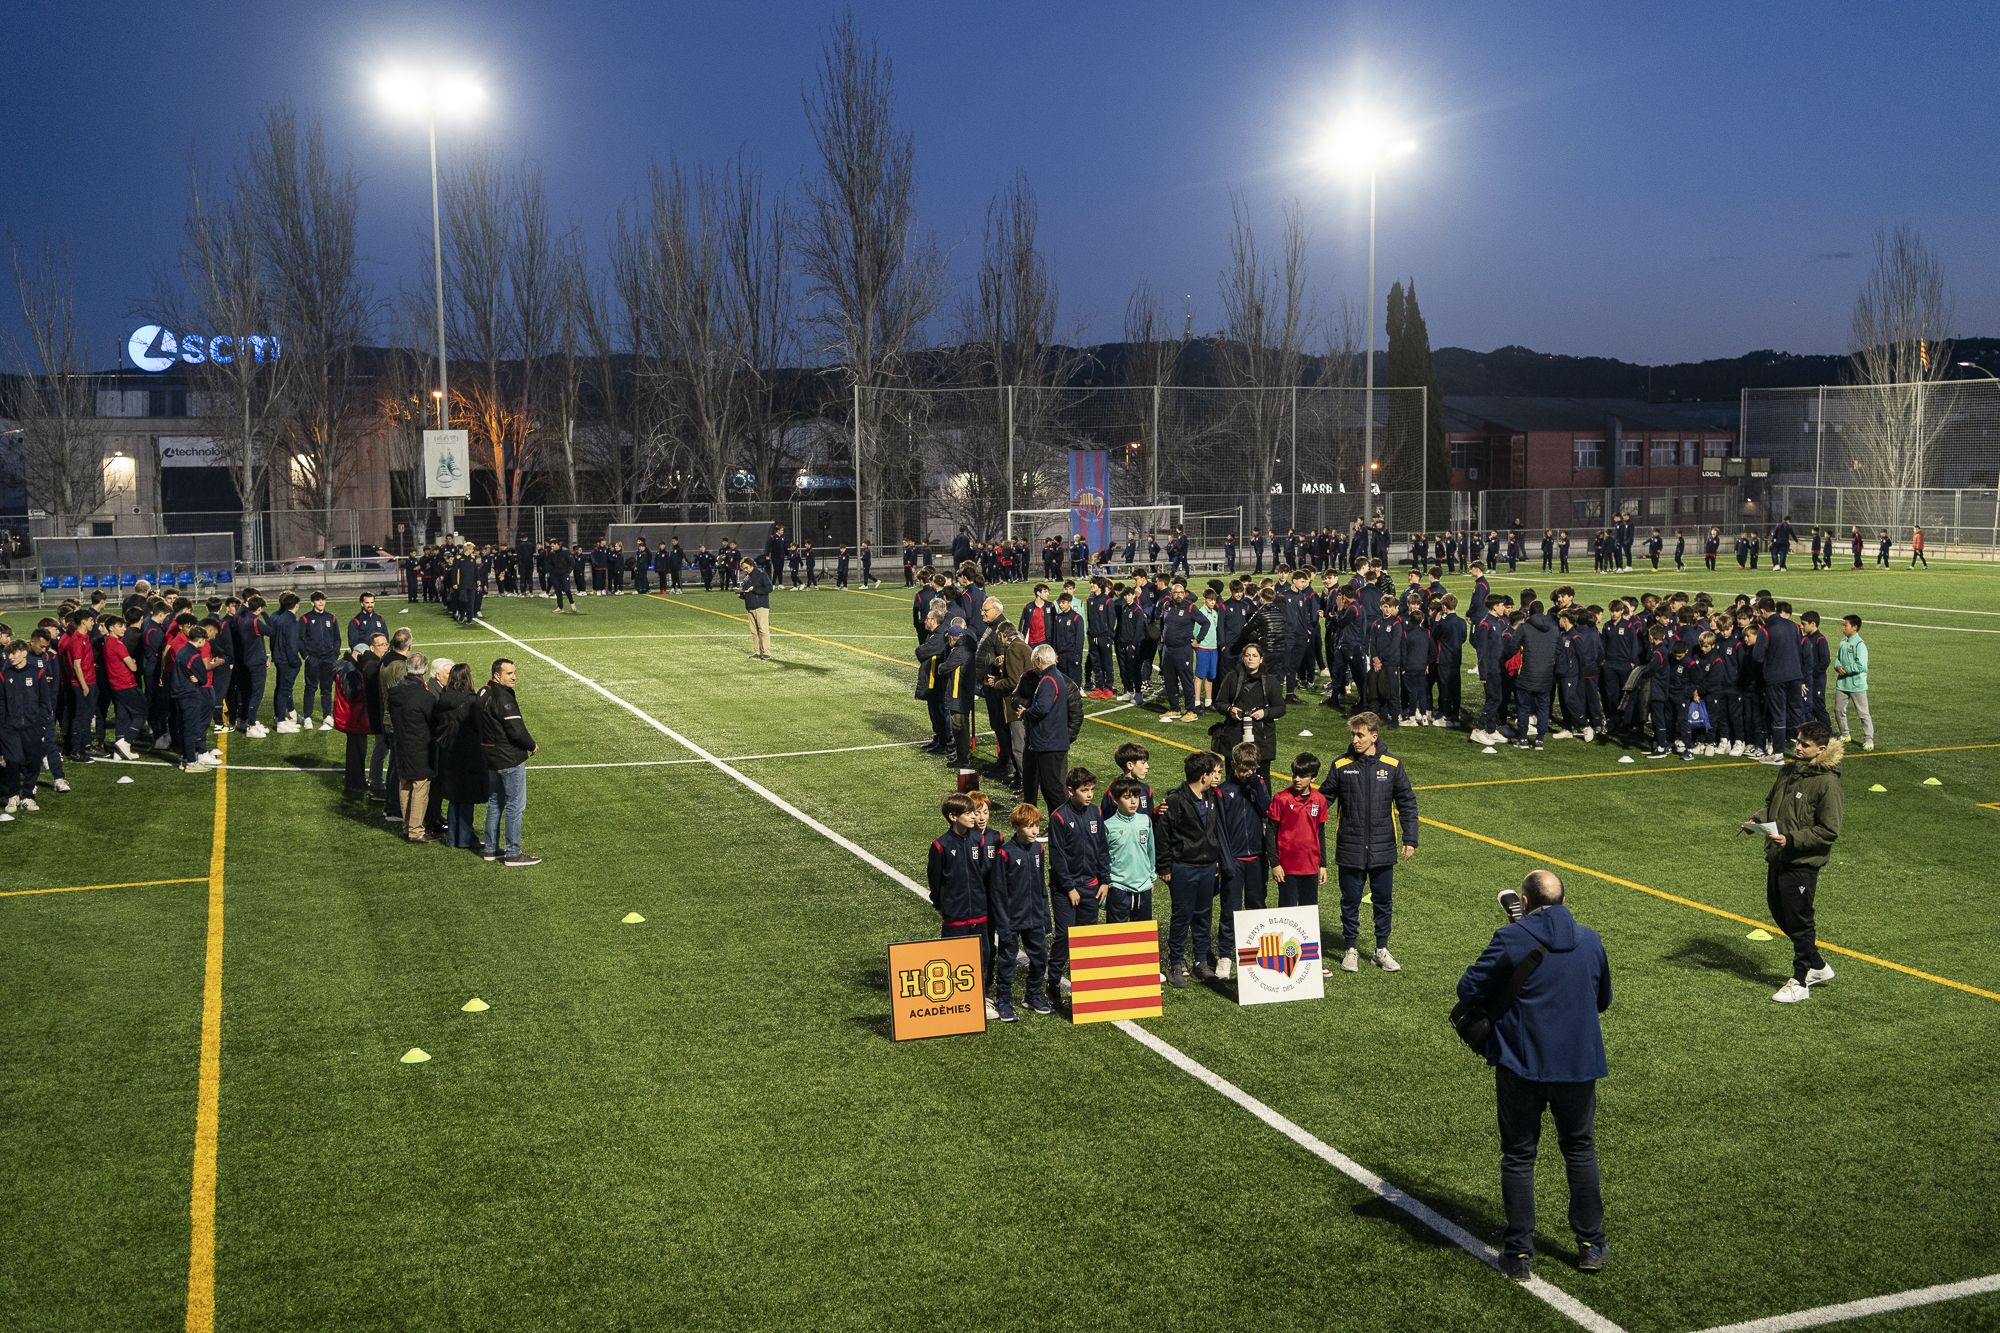 Presentació d'equips de la Penya Blaugrana Sant Cugat. FOTO: Mireia Comas